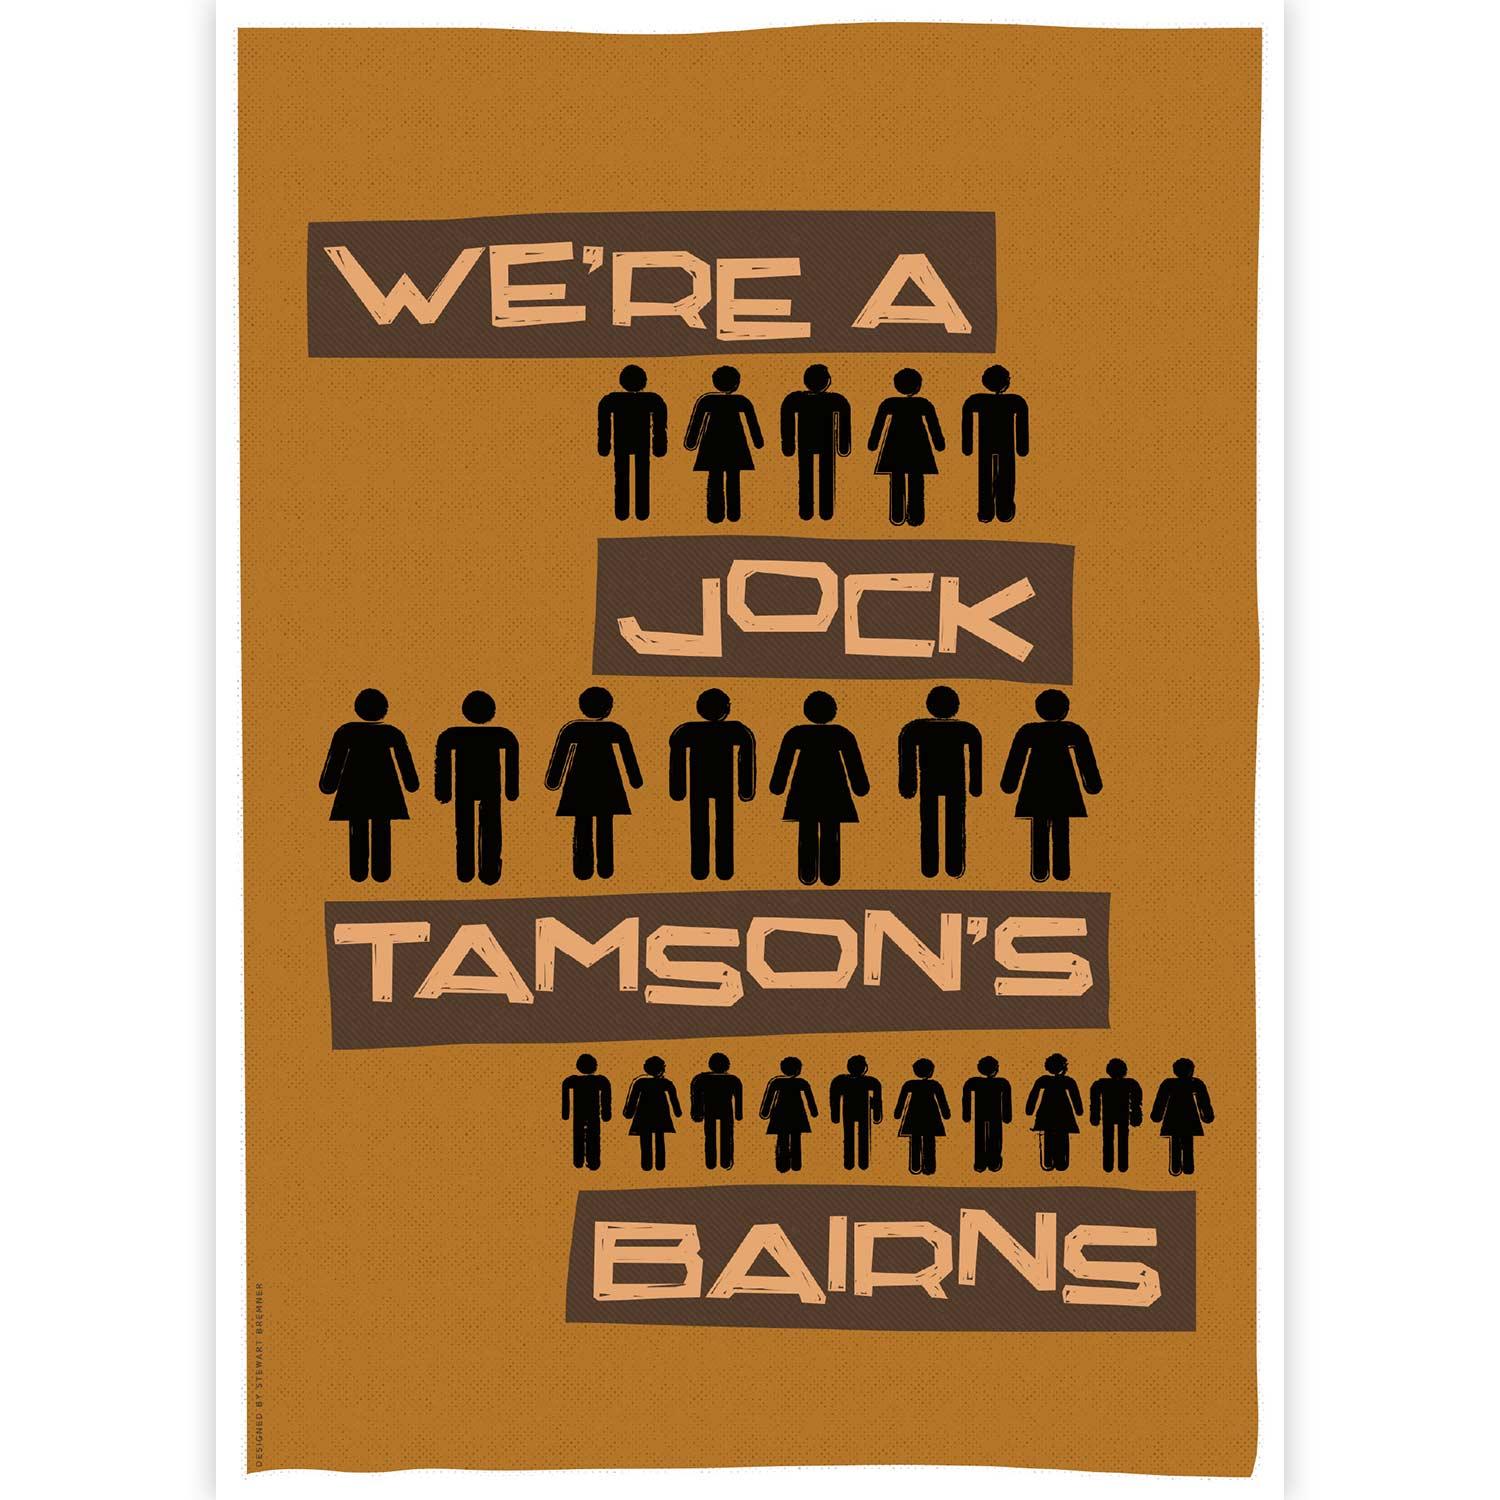 We're a Jock Tamson's Bairns by Stewart Bremner